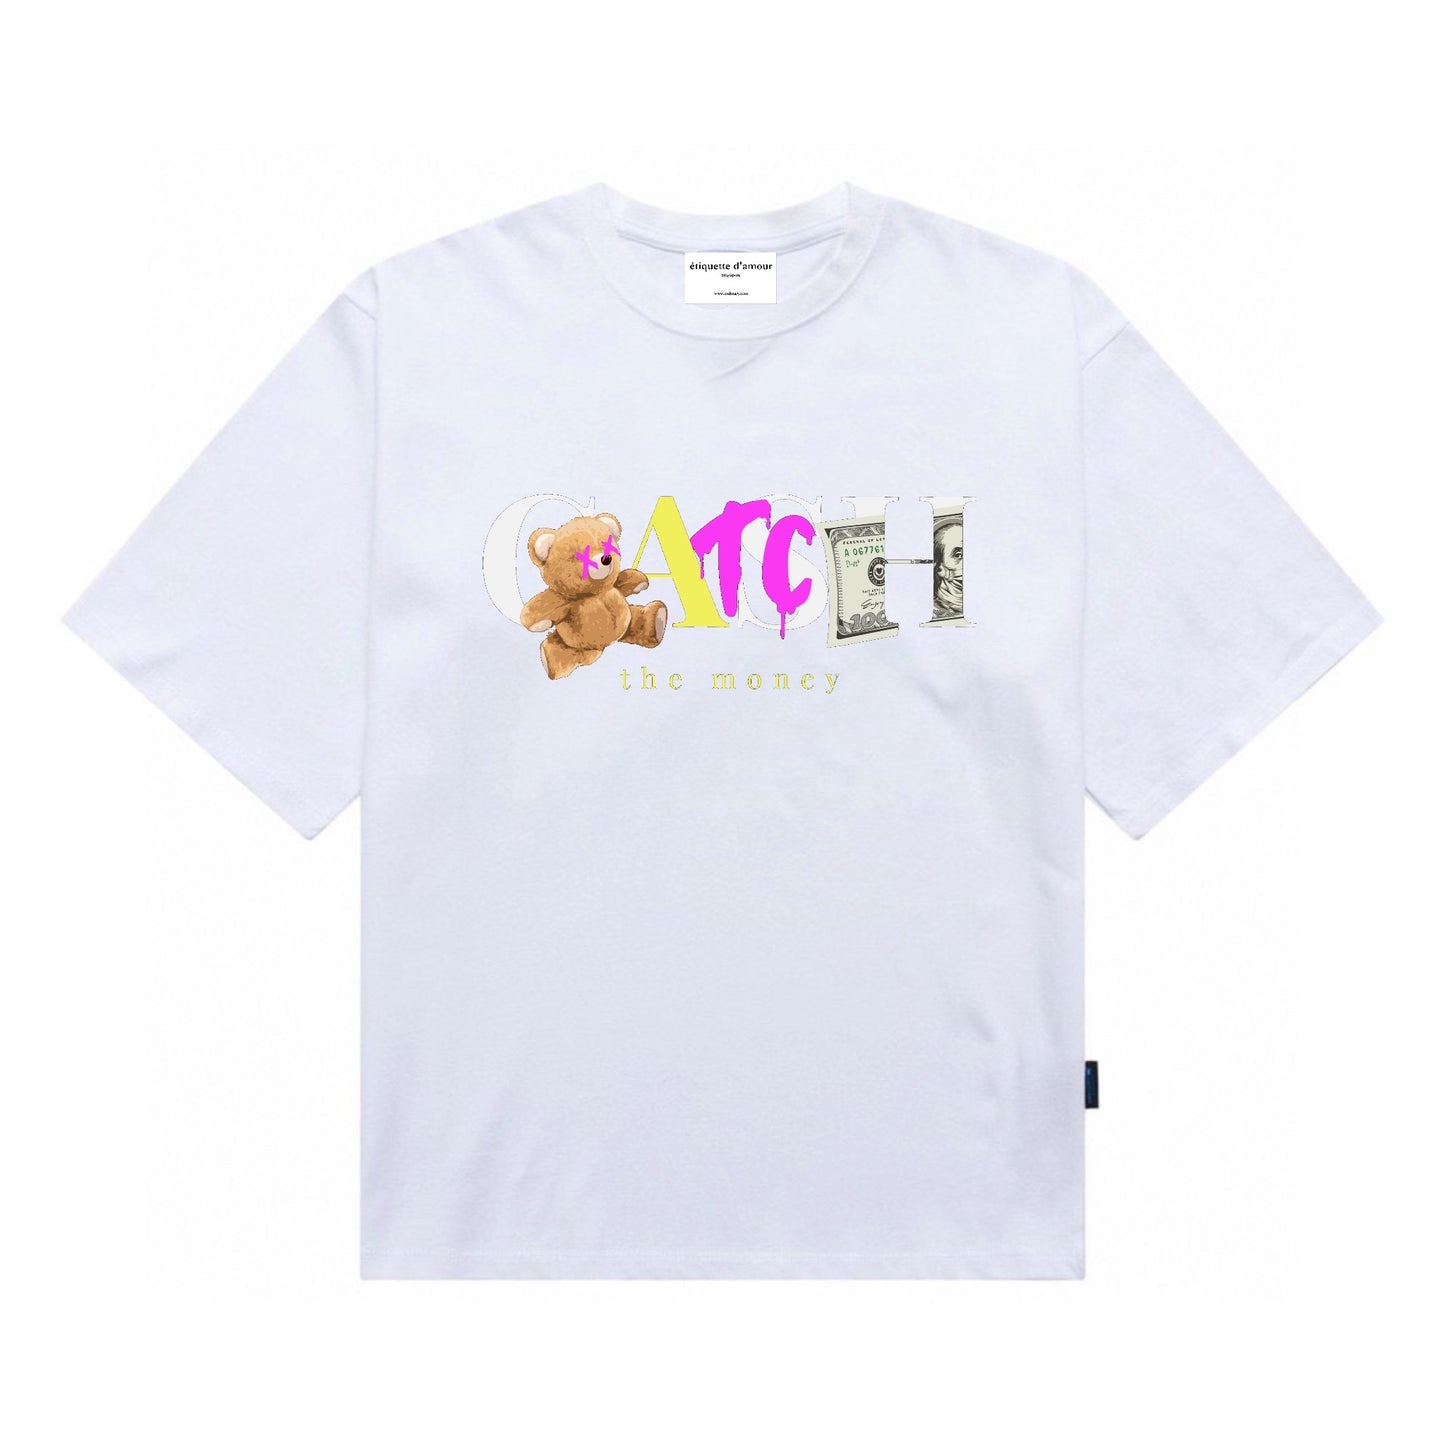 Etiquette Oversized T-Shirt - [0051] Cash Flow Club